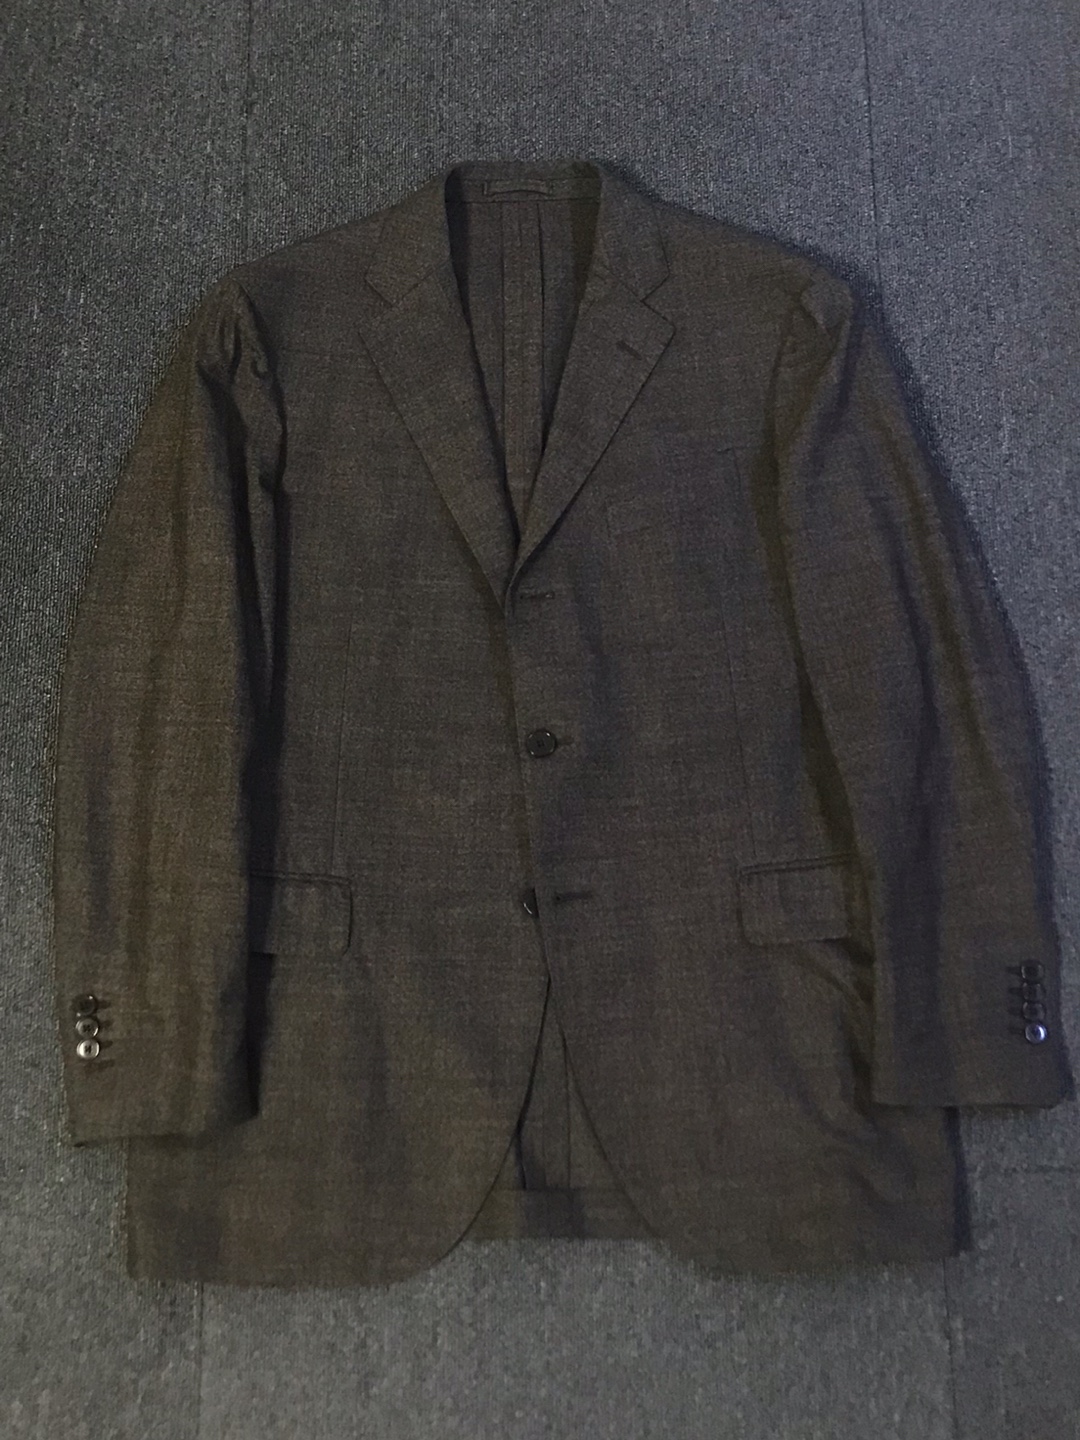 lardini wool/elastane 3/2 suit (실측 참고)